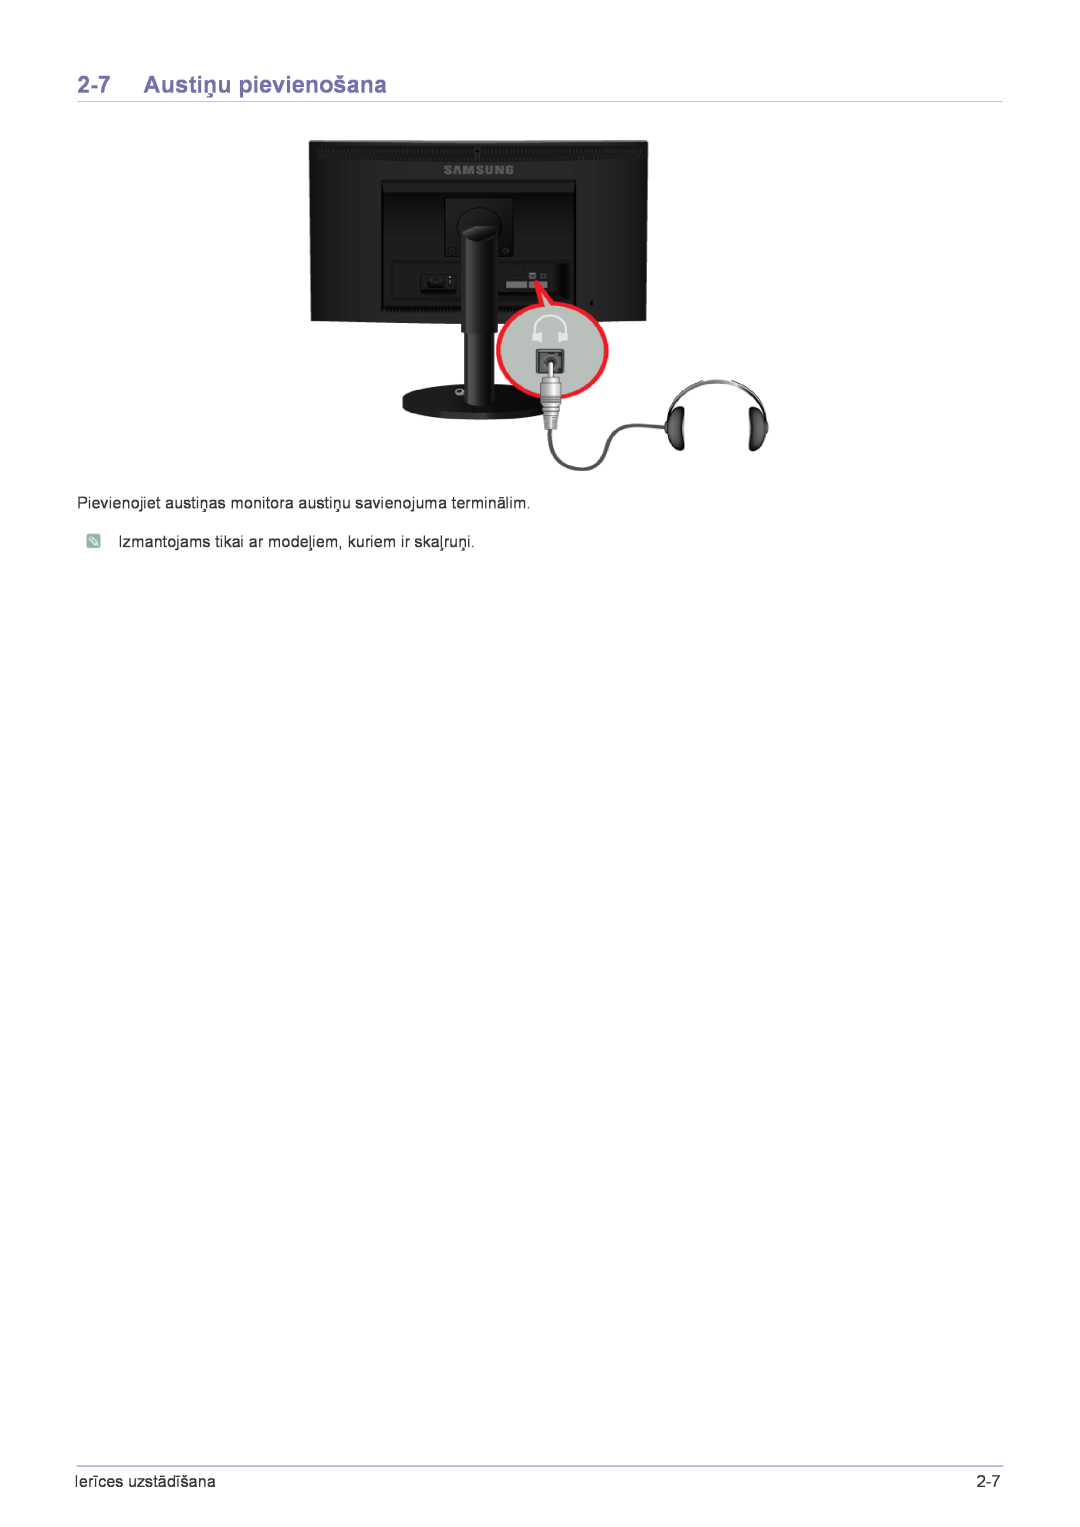 Samsung LS23CBUMBV/EN, LS20CLYSB/EN Austiņu pievienošana, Pievienojiet austiņas monitora austiņu savienojuma terminālim 